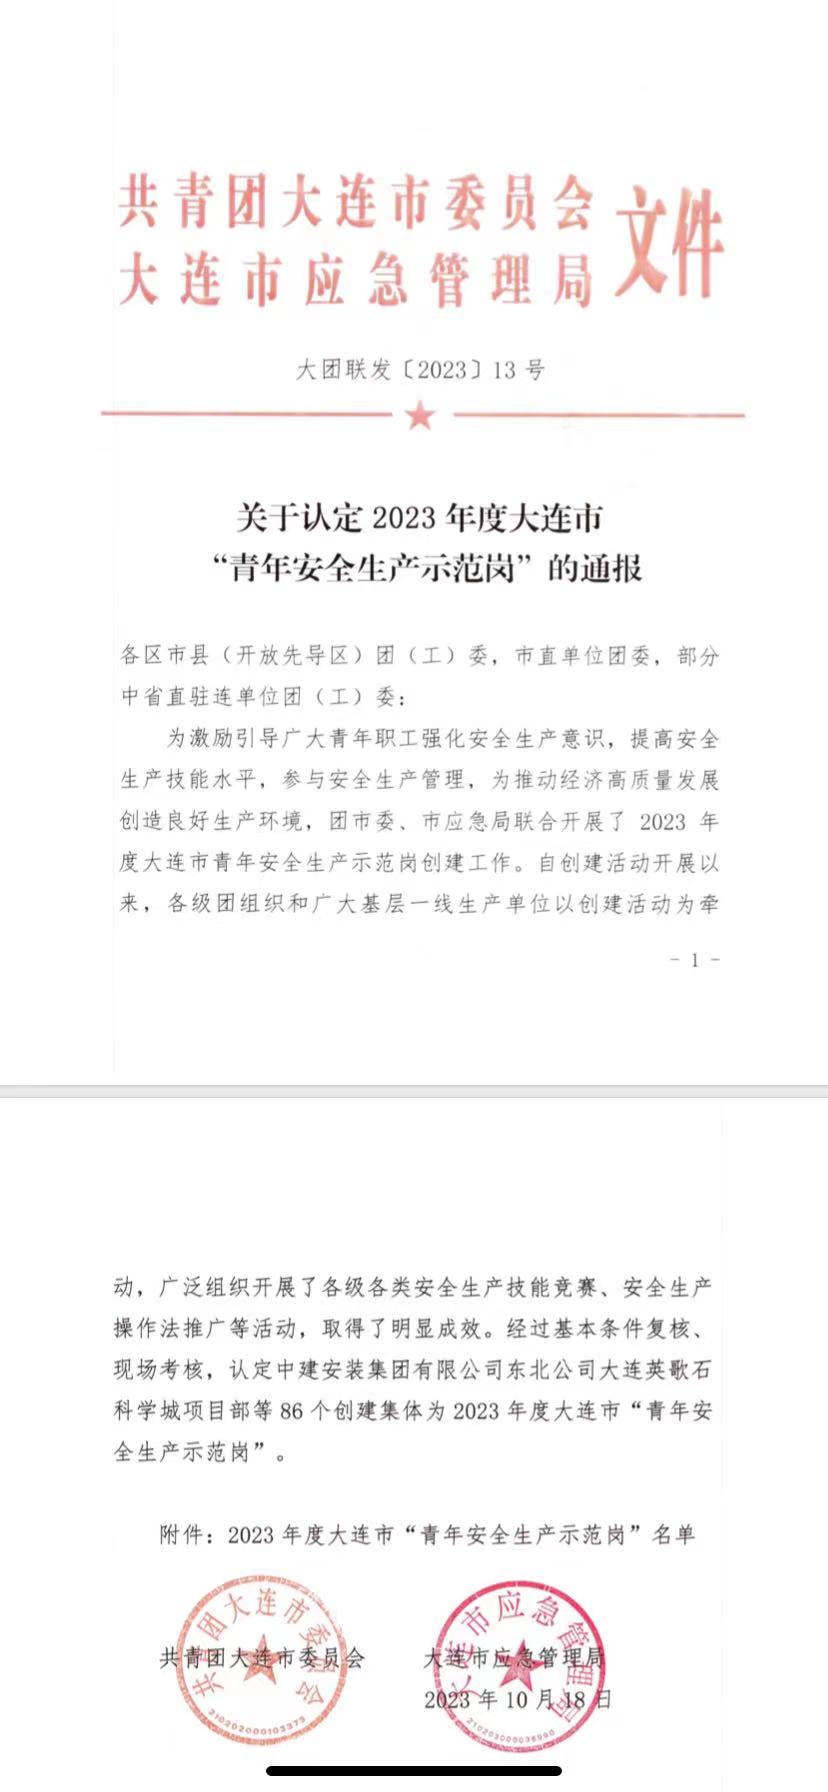 大连华韩被评定为“2023年青年安全生产示范岗”